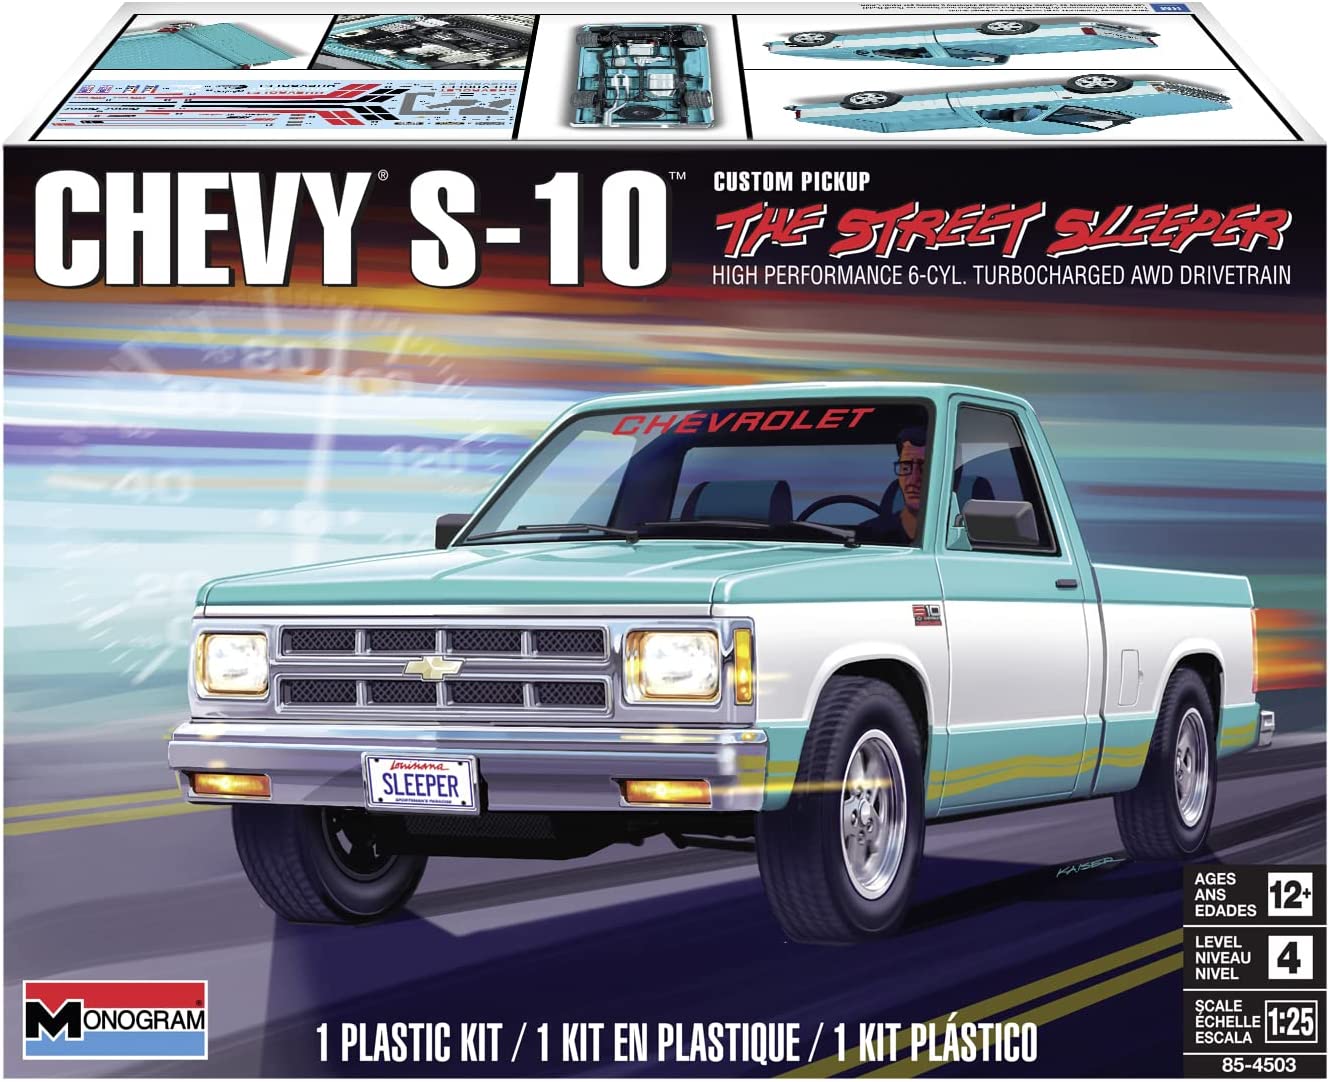 REVELL 85-4503 1/25 Chevy S-10 Custom Pickup